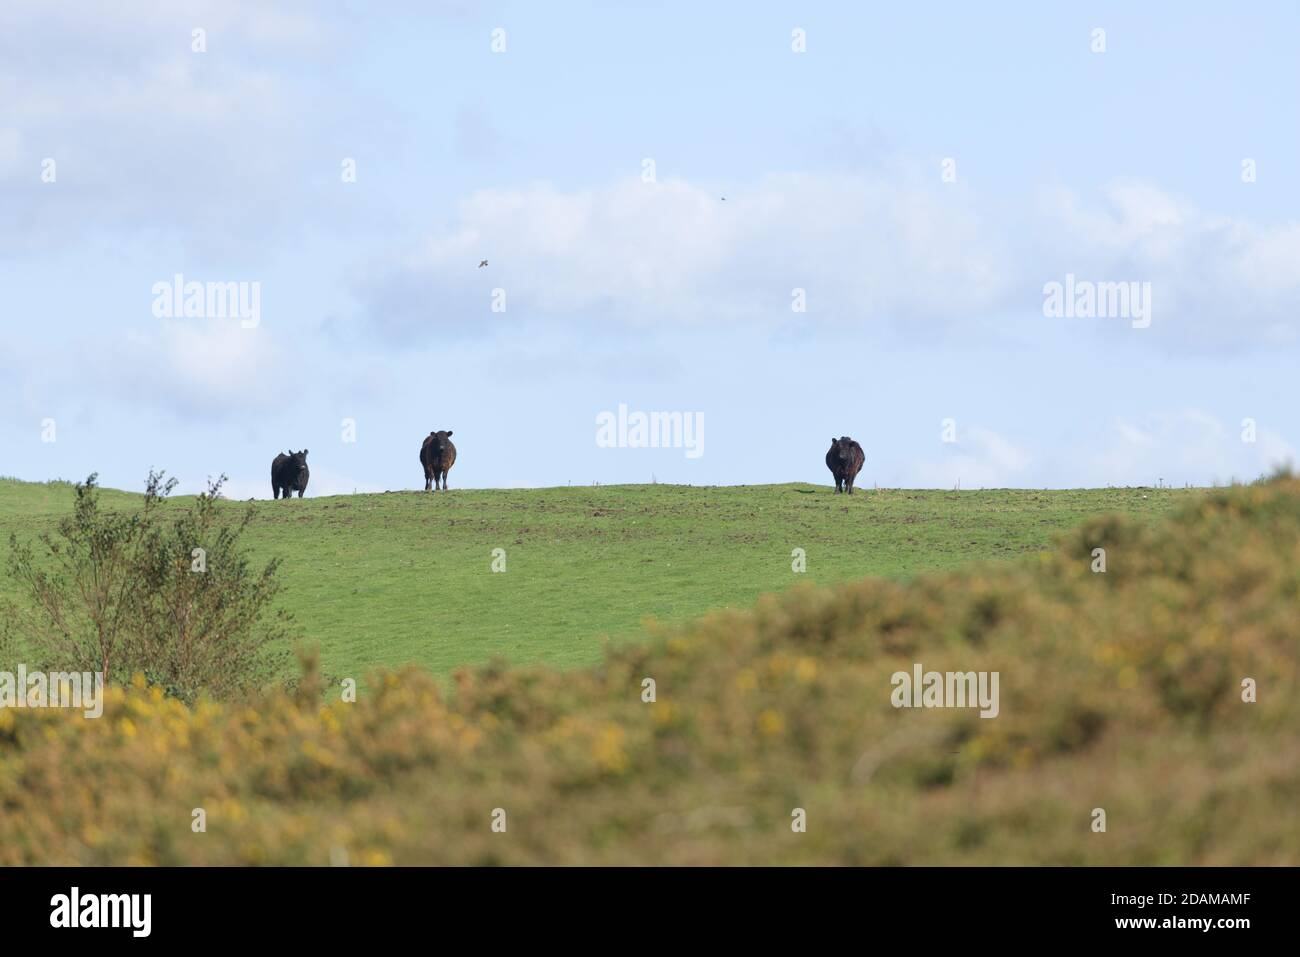 Le bétail noir foncé se démarque contre le ciel bleu vif lors d'un jour d'été ensoleillé. La mise au point sélective estompe le premier plan surcultivé et met en évidence les vaches Banque D'Images